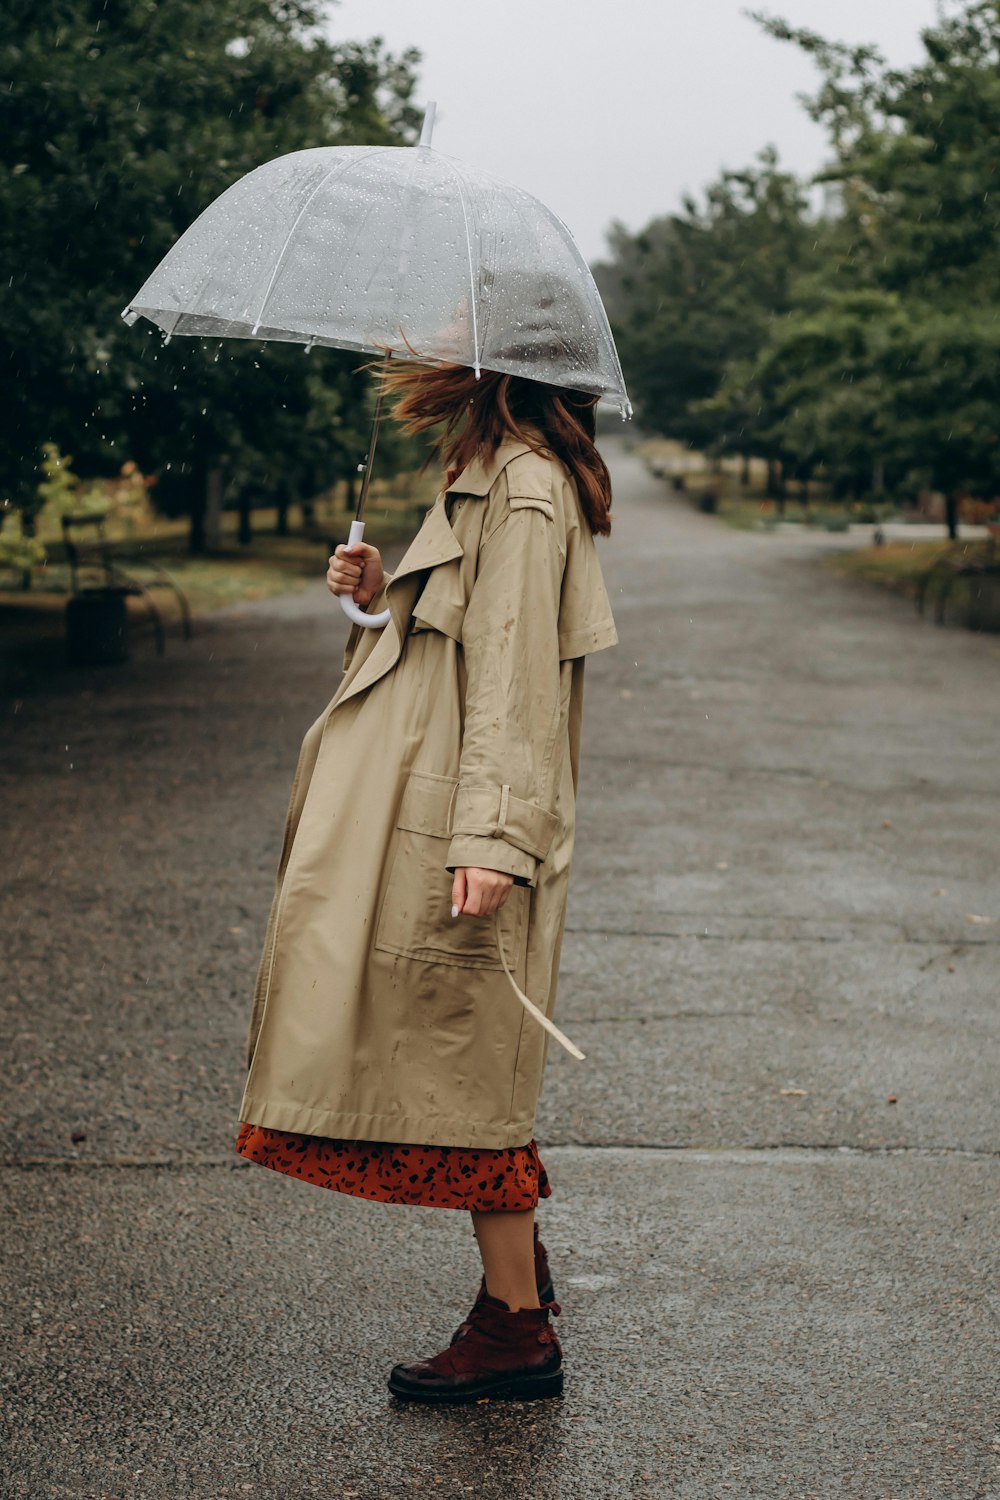 femme en manteau marron tenant un parapluie marchant dans la rue pendant la journée